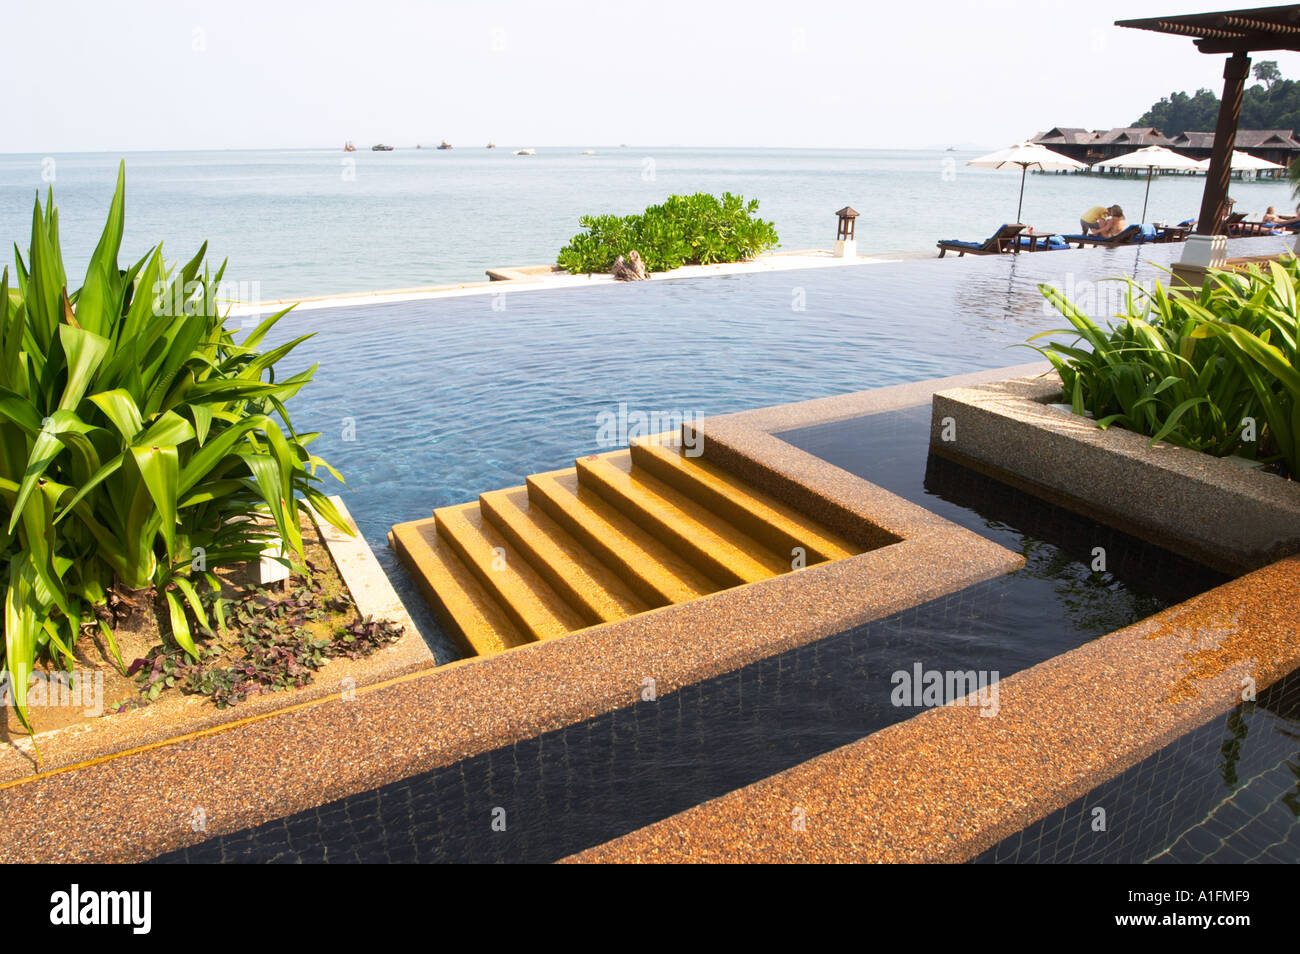 Bellamente diseñado piscina infinity en la villa spa zona de pangkor Laut Pangkor laut Malasia es un impresionante complejo de lujo situado en su propia isla privada en Malasia Foto de stock